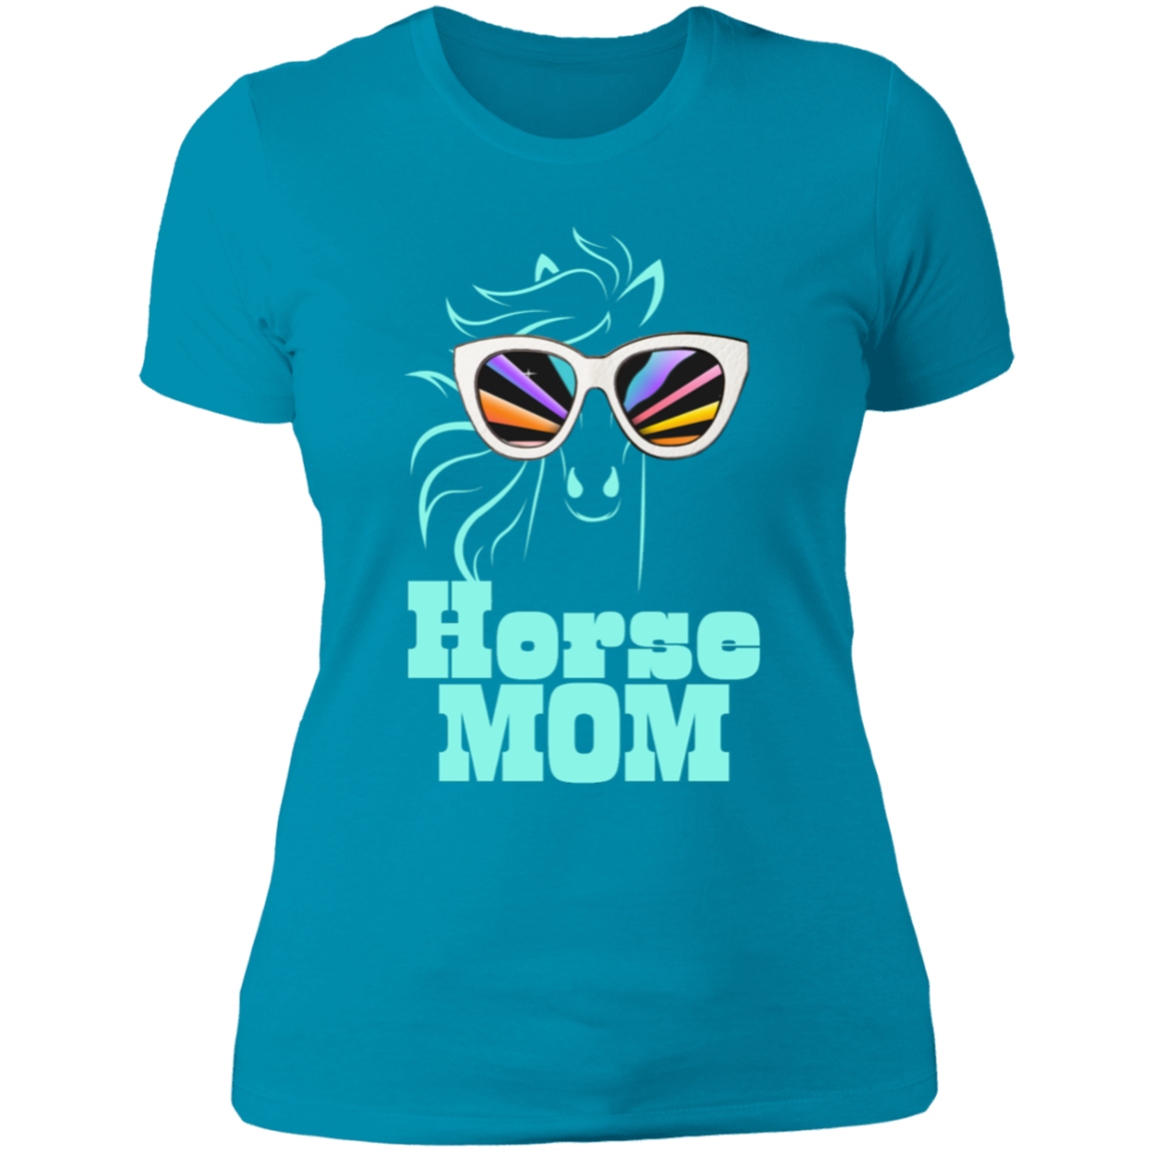 Horse Mom T-Shirt For Horse Loving Moms